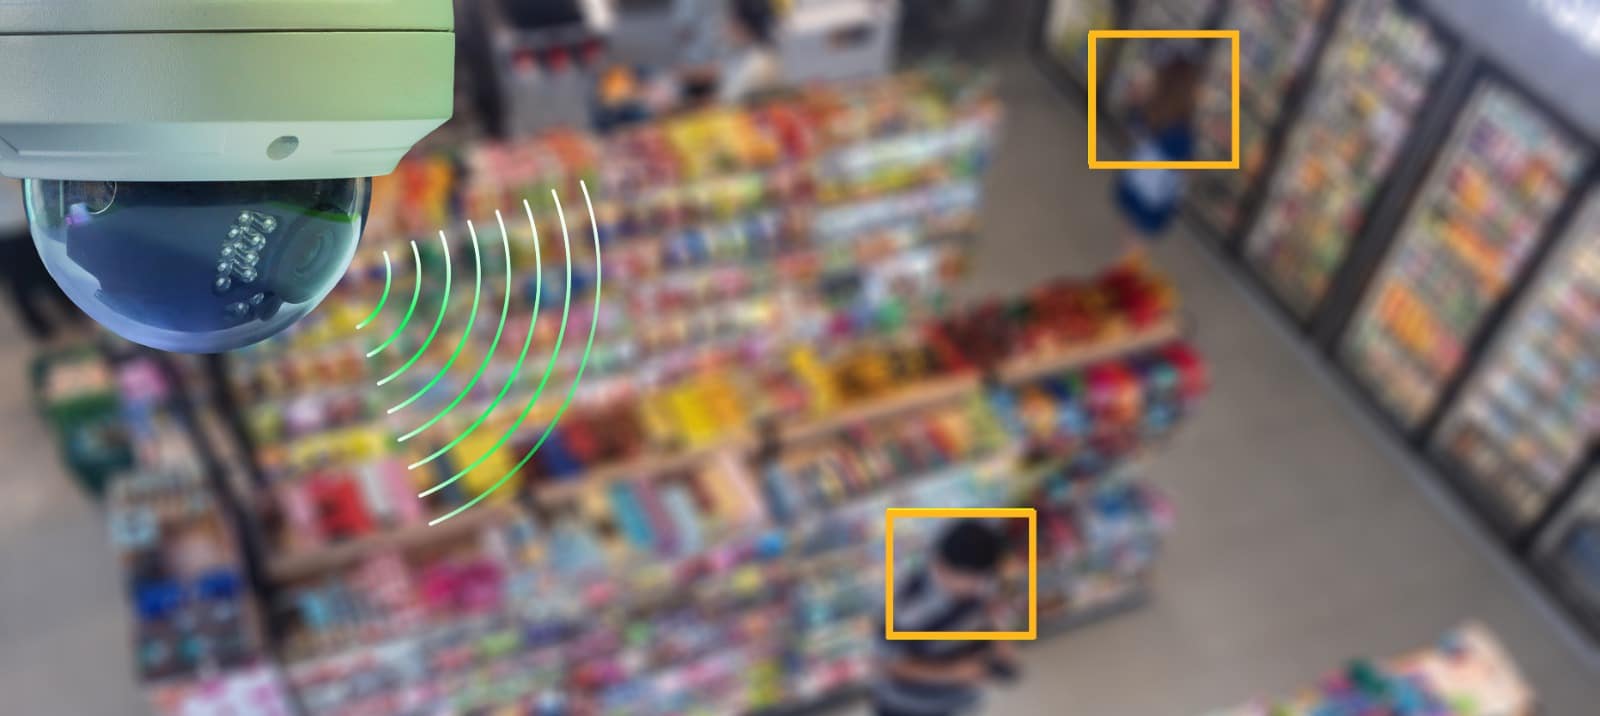 Ein Smart-Retail-System mit integrierter CCTV-Kamera in einem Lebensmittelgeschäft.